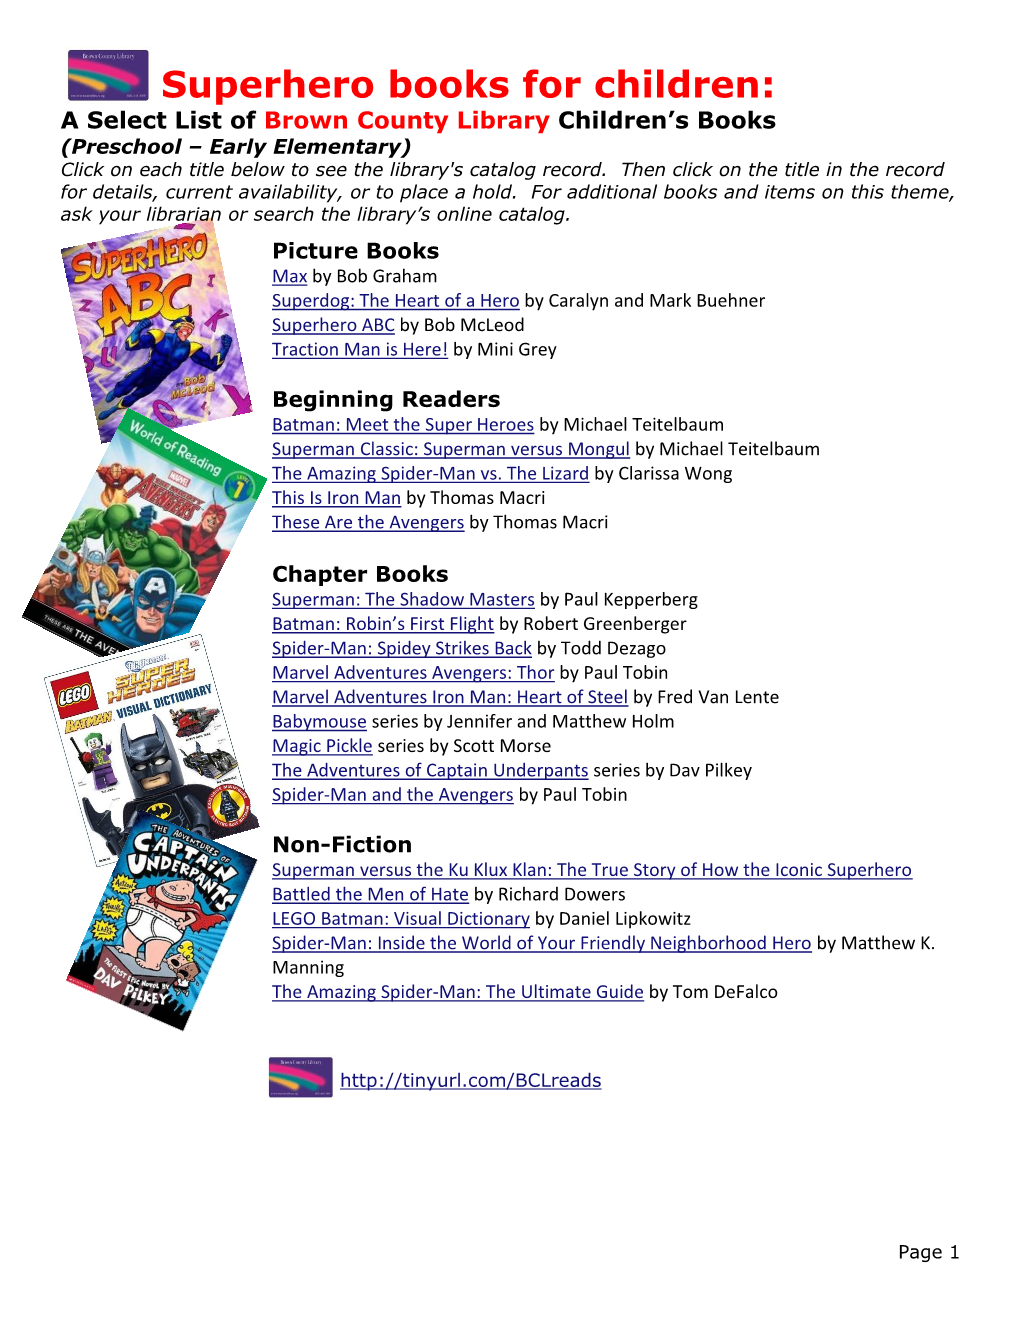 Superhero Books for Children